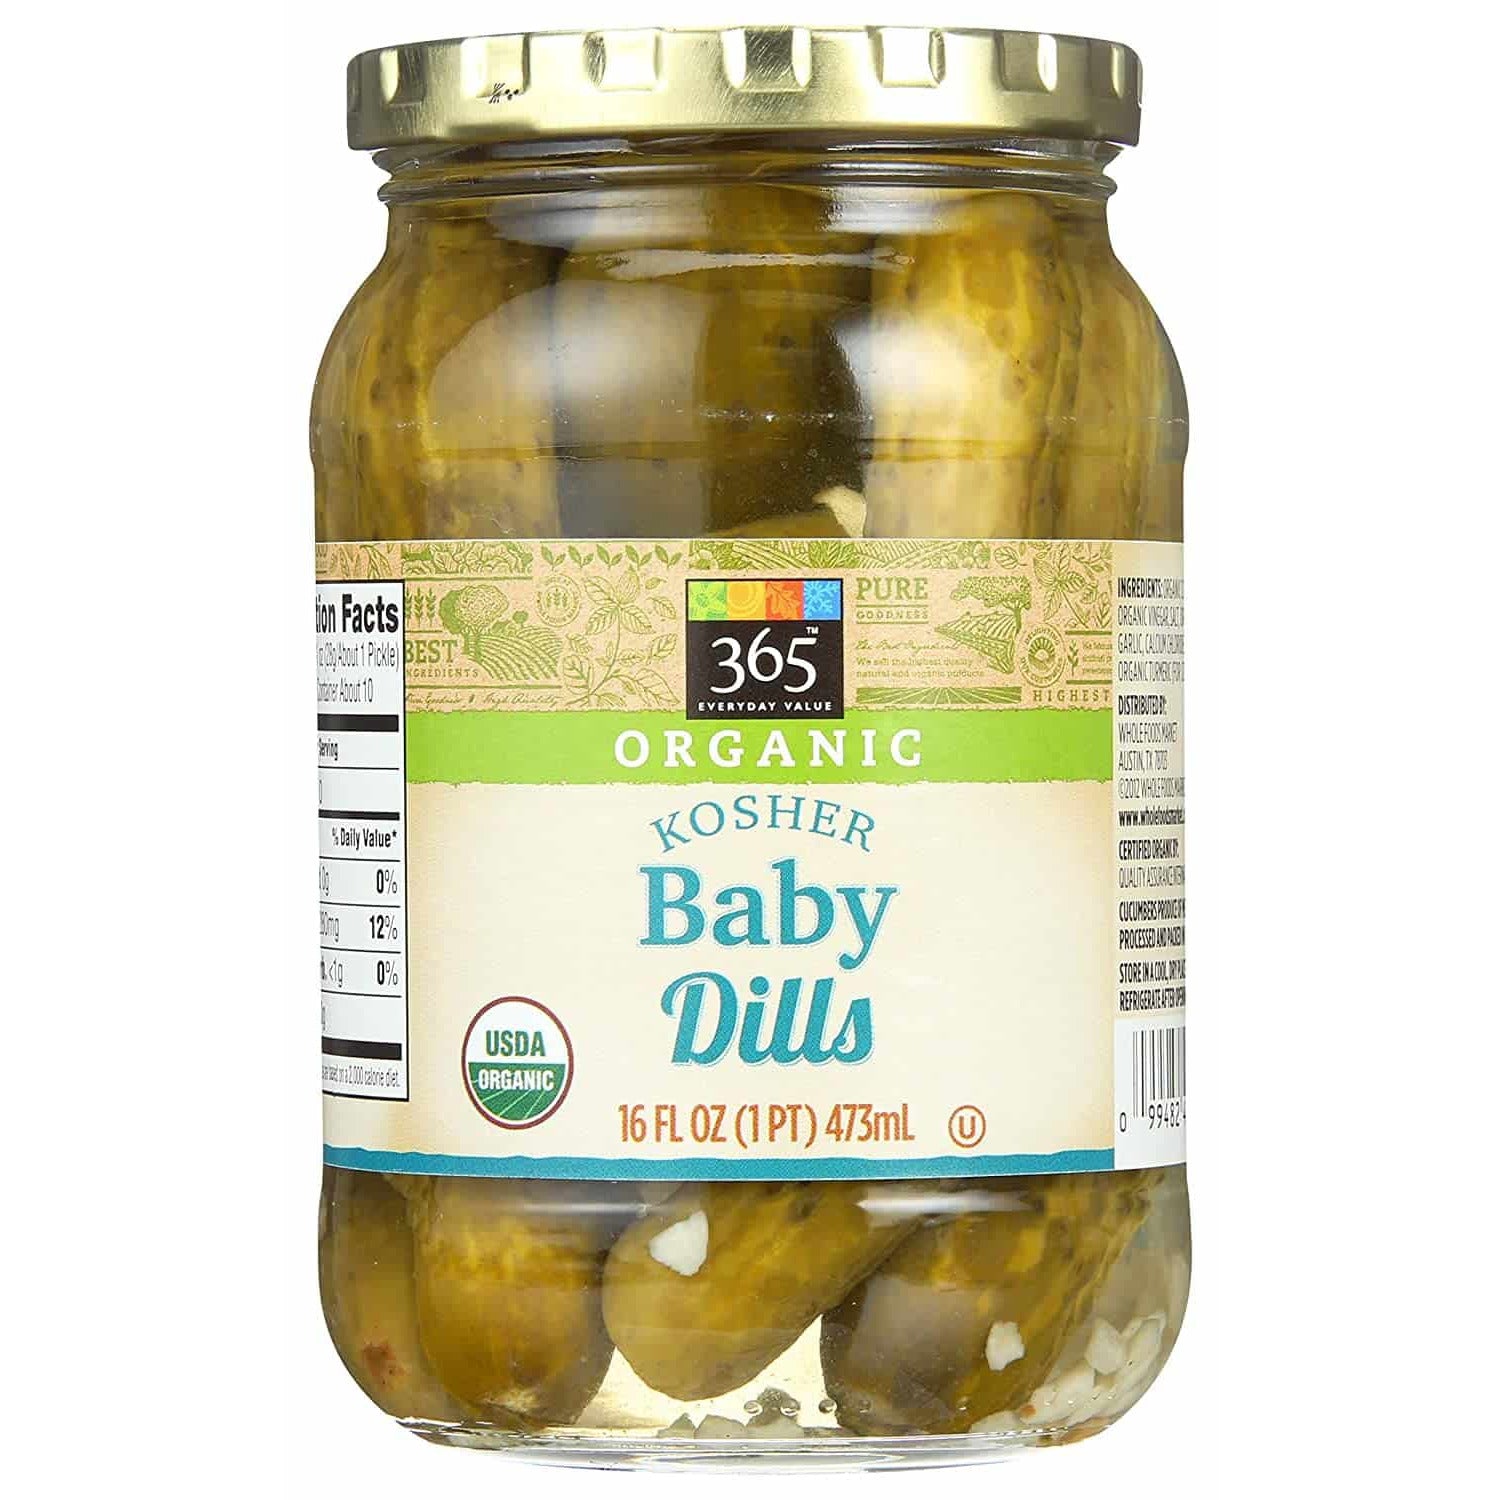 Organic Baby Kosher Dills, 16 fl oz